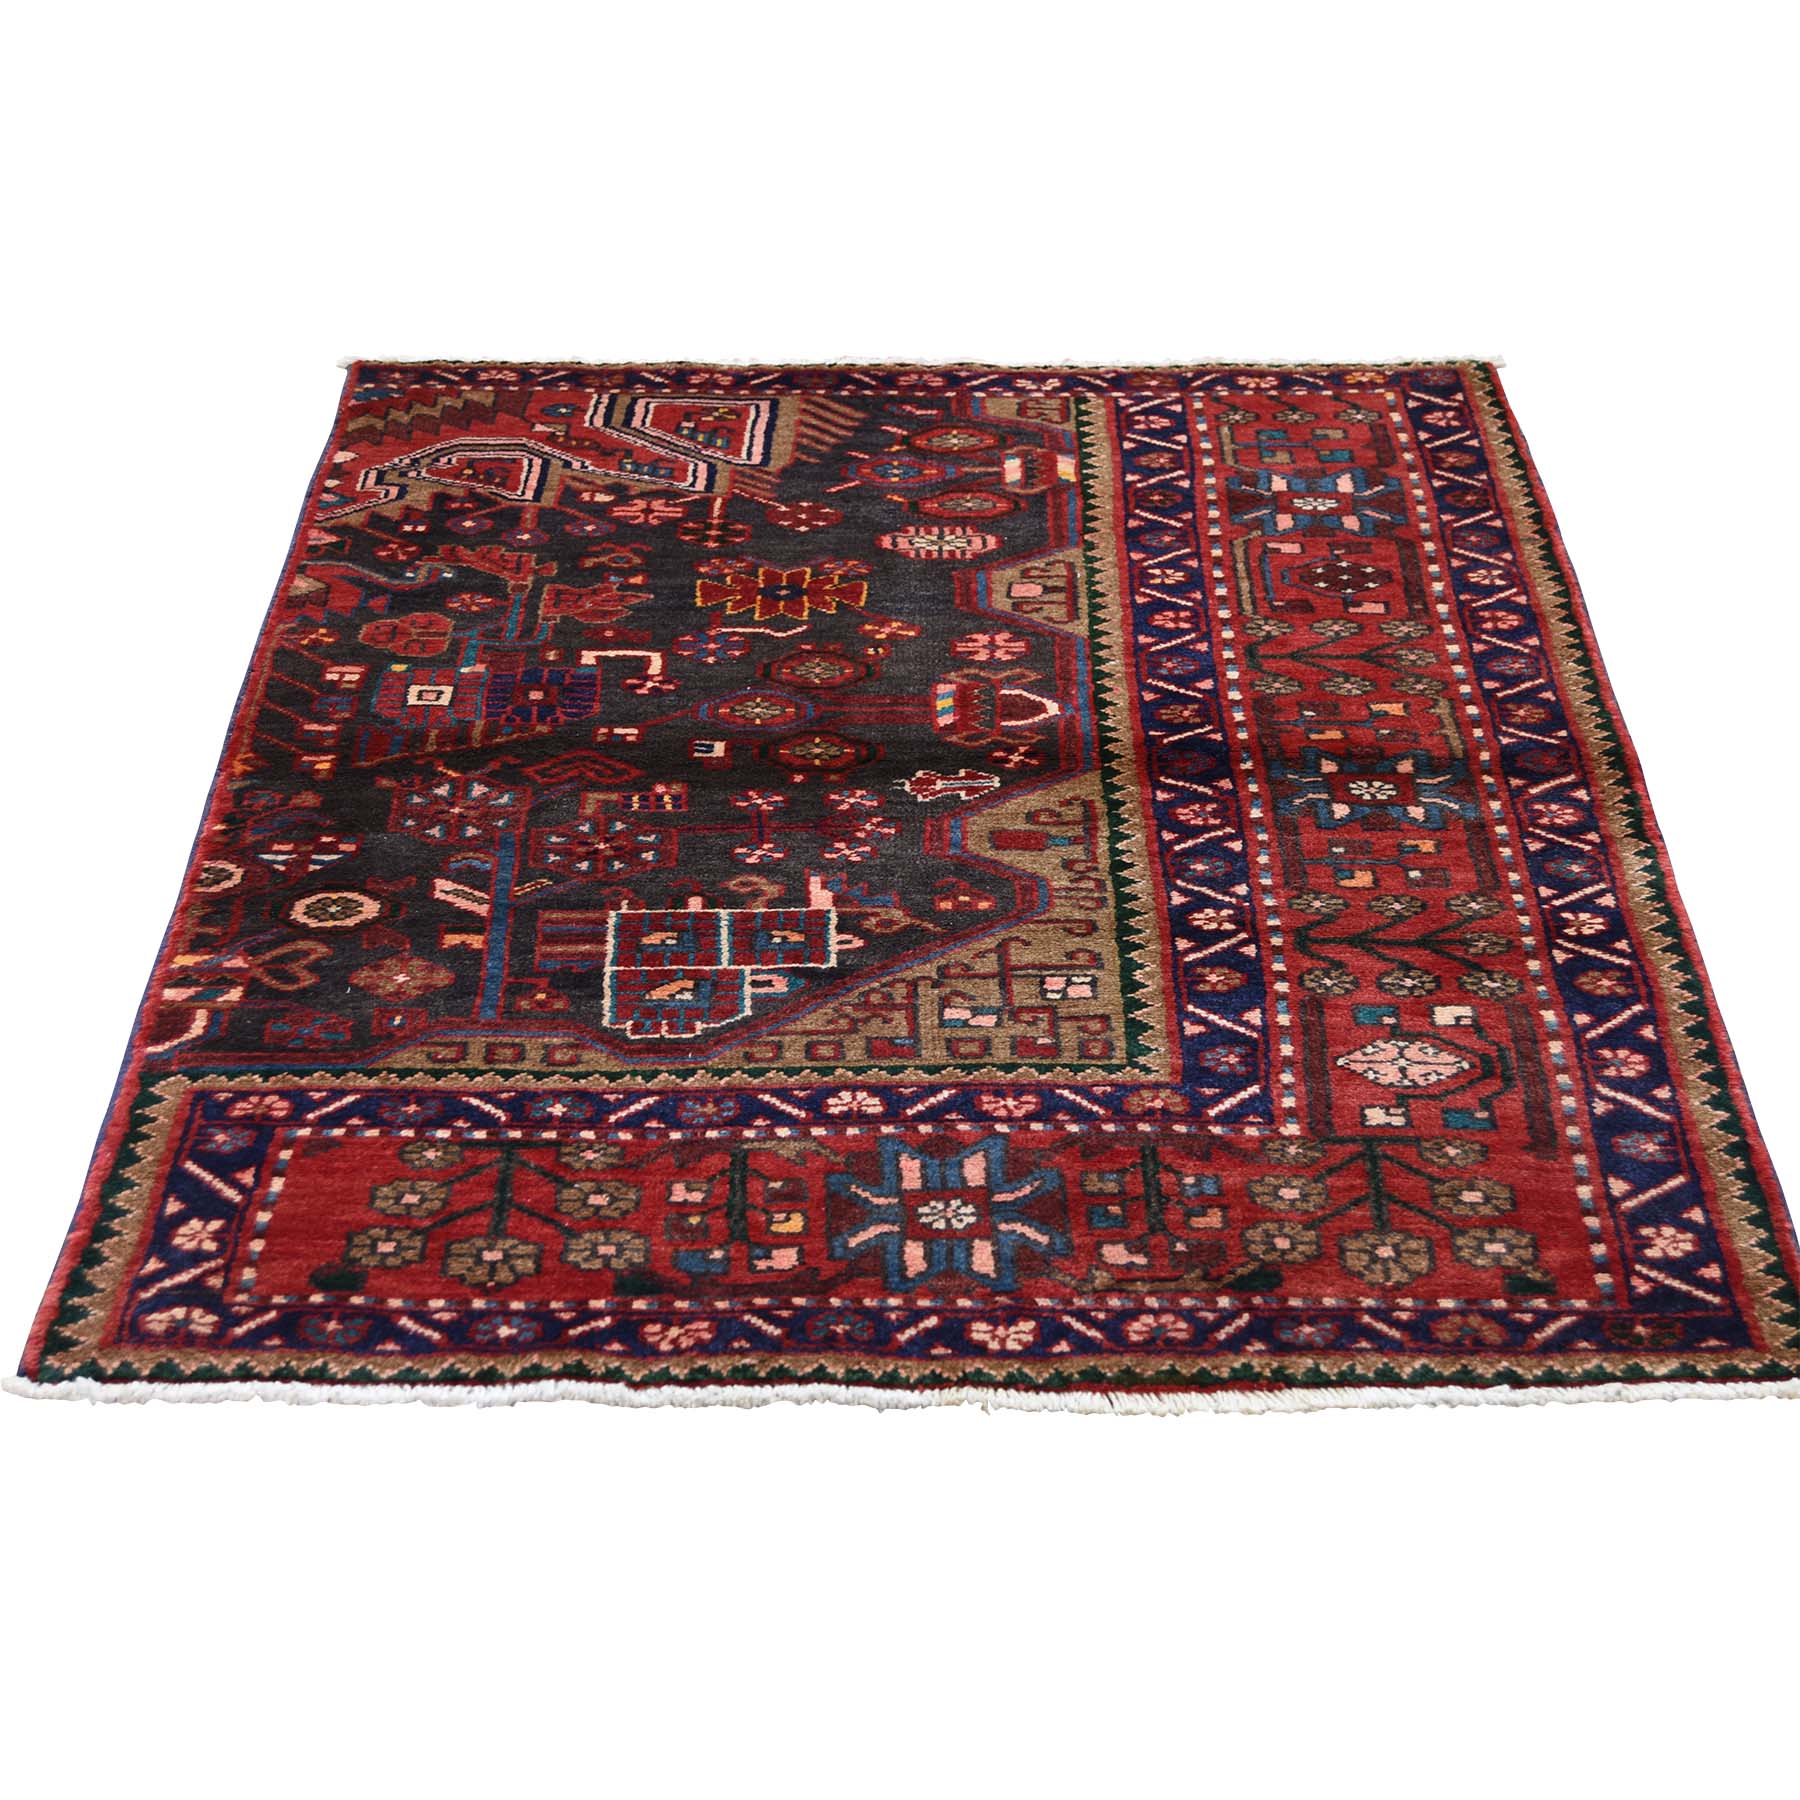 3'6"x4'10" Vintage Persian Nahavand Sampler Pure Wool Hand Woven Oriental Rug 